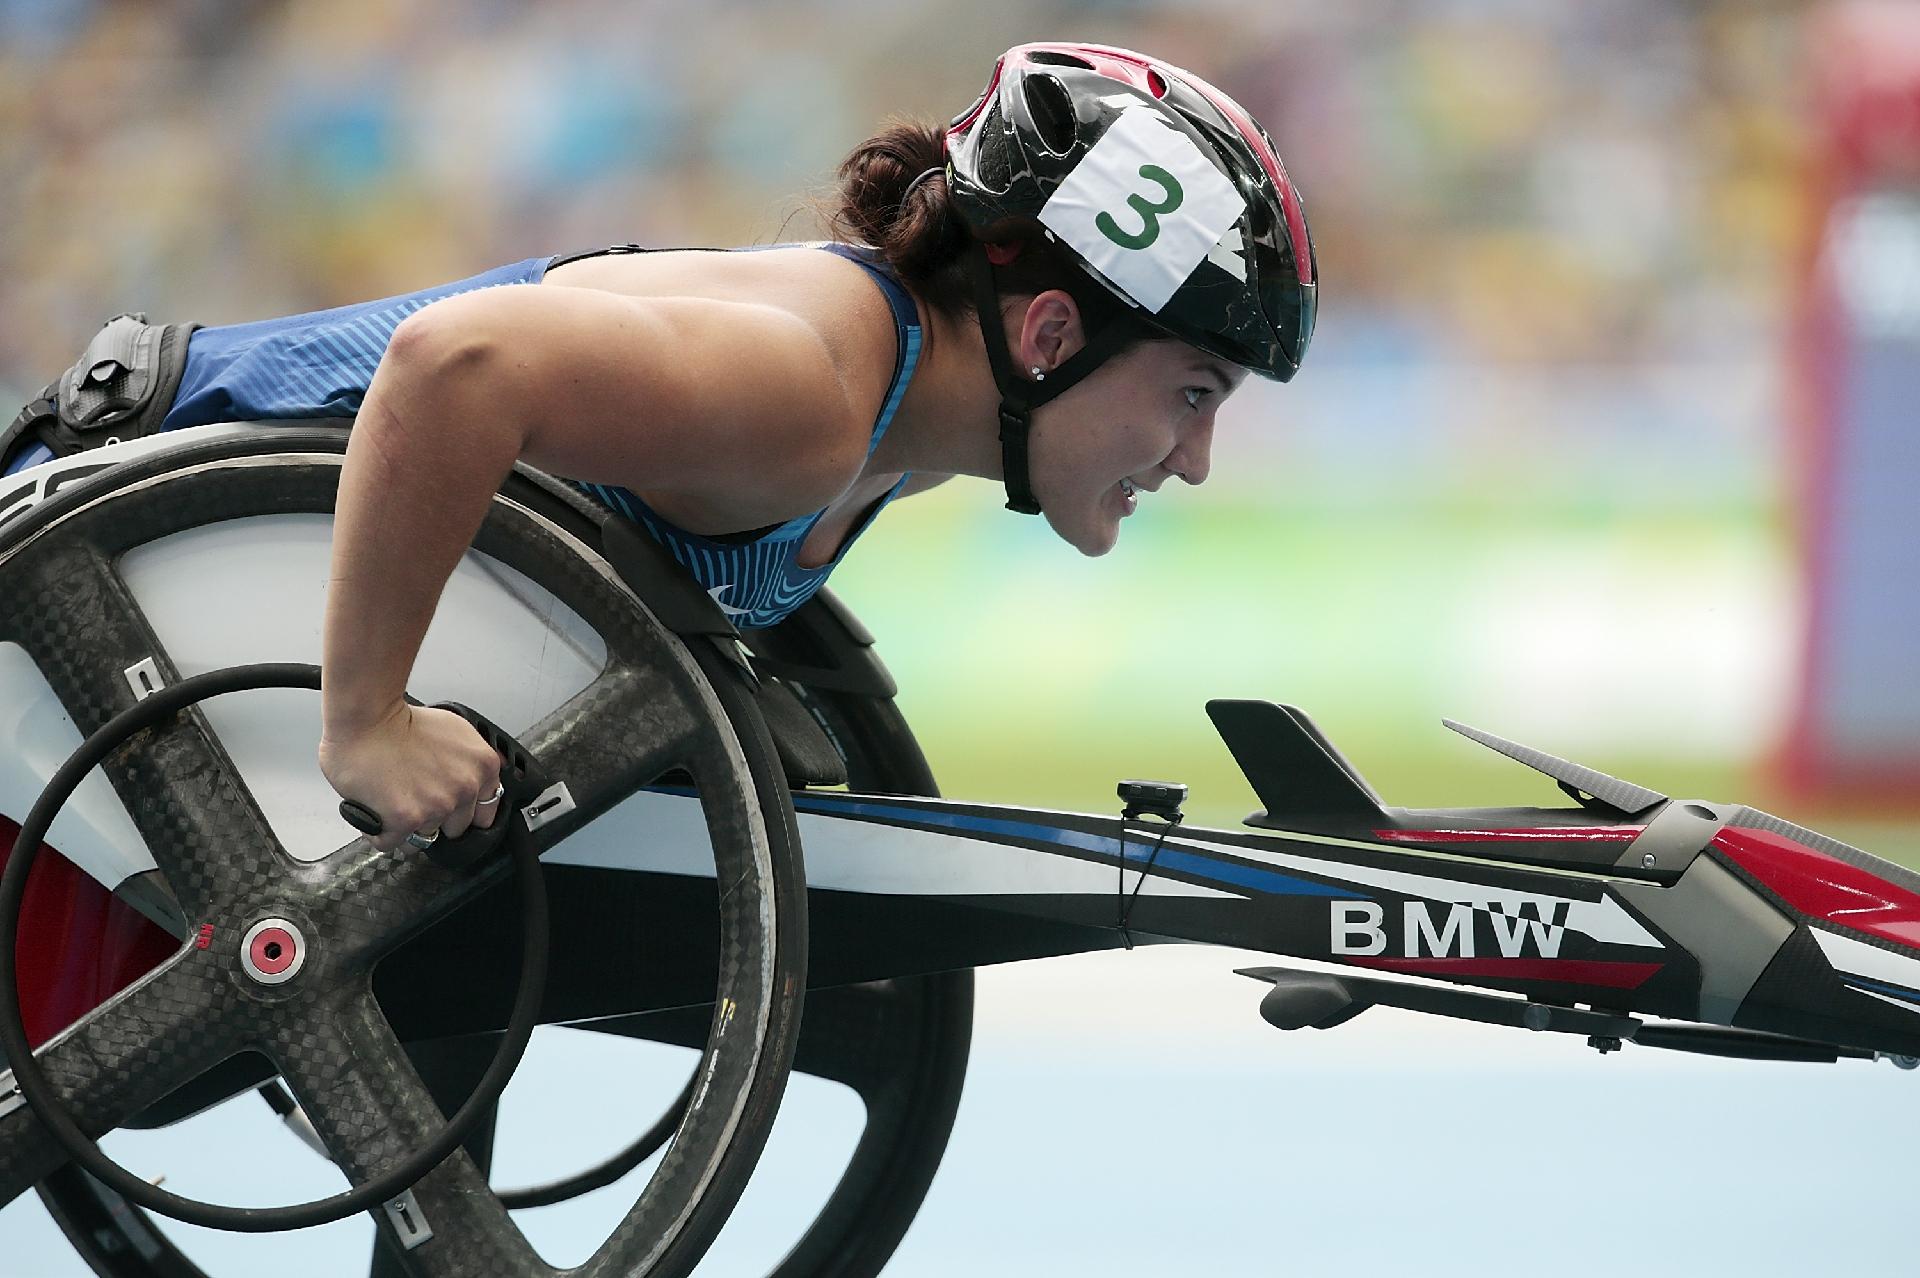 Olimpíadas: Tenista espanhola abandona partida em cadeira de rodas por  forte calor